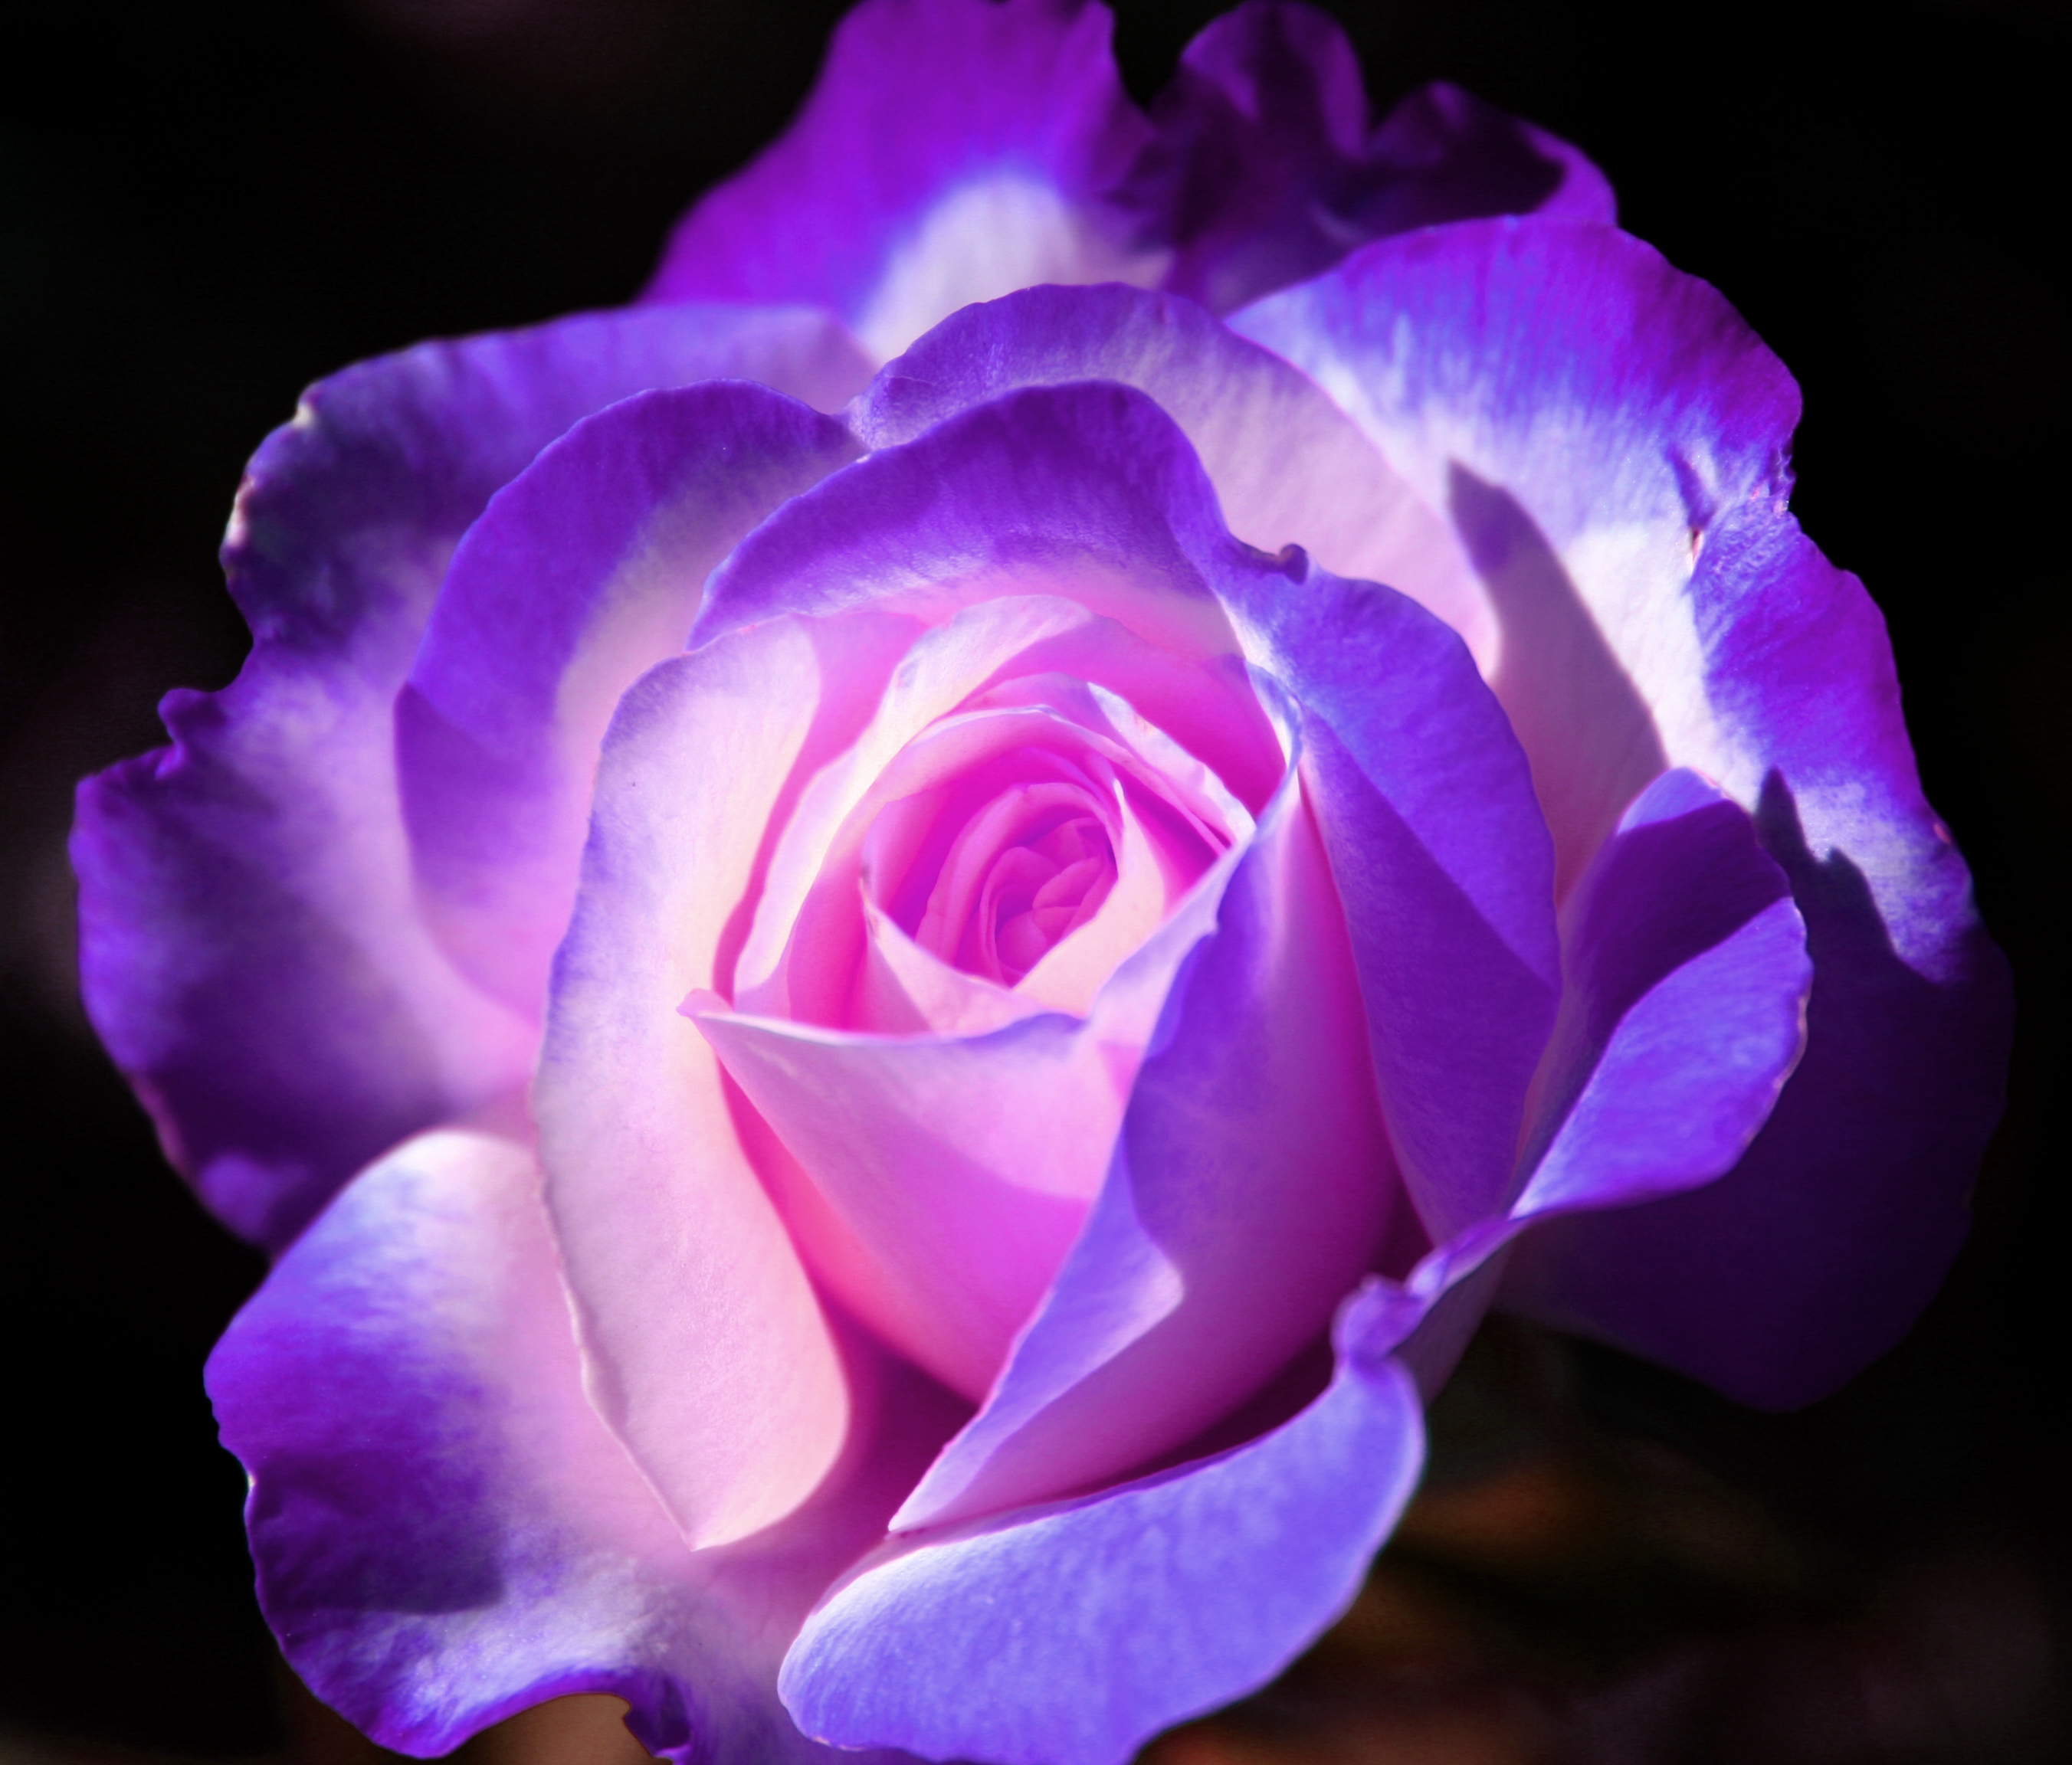 Tổng hợp hình ảnh hoa hồng tím đẹp nhất - [Kích thước hình ảnh: 2704x2304 px]